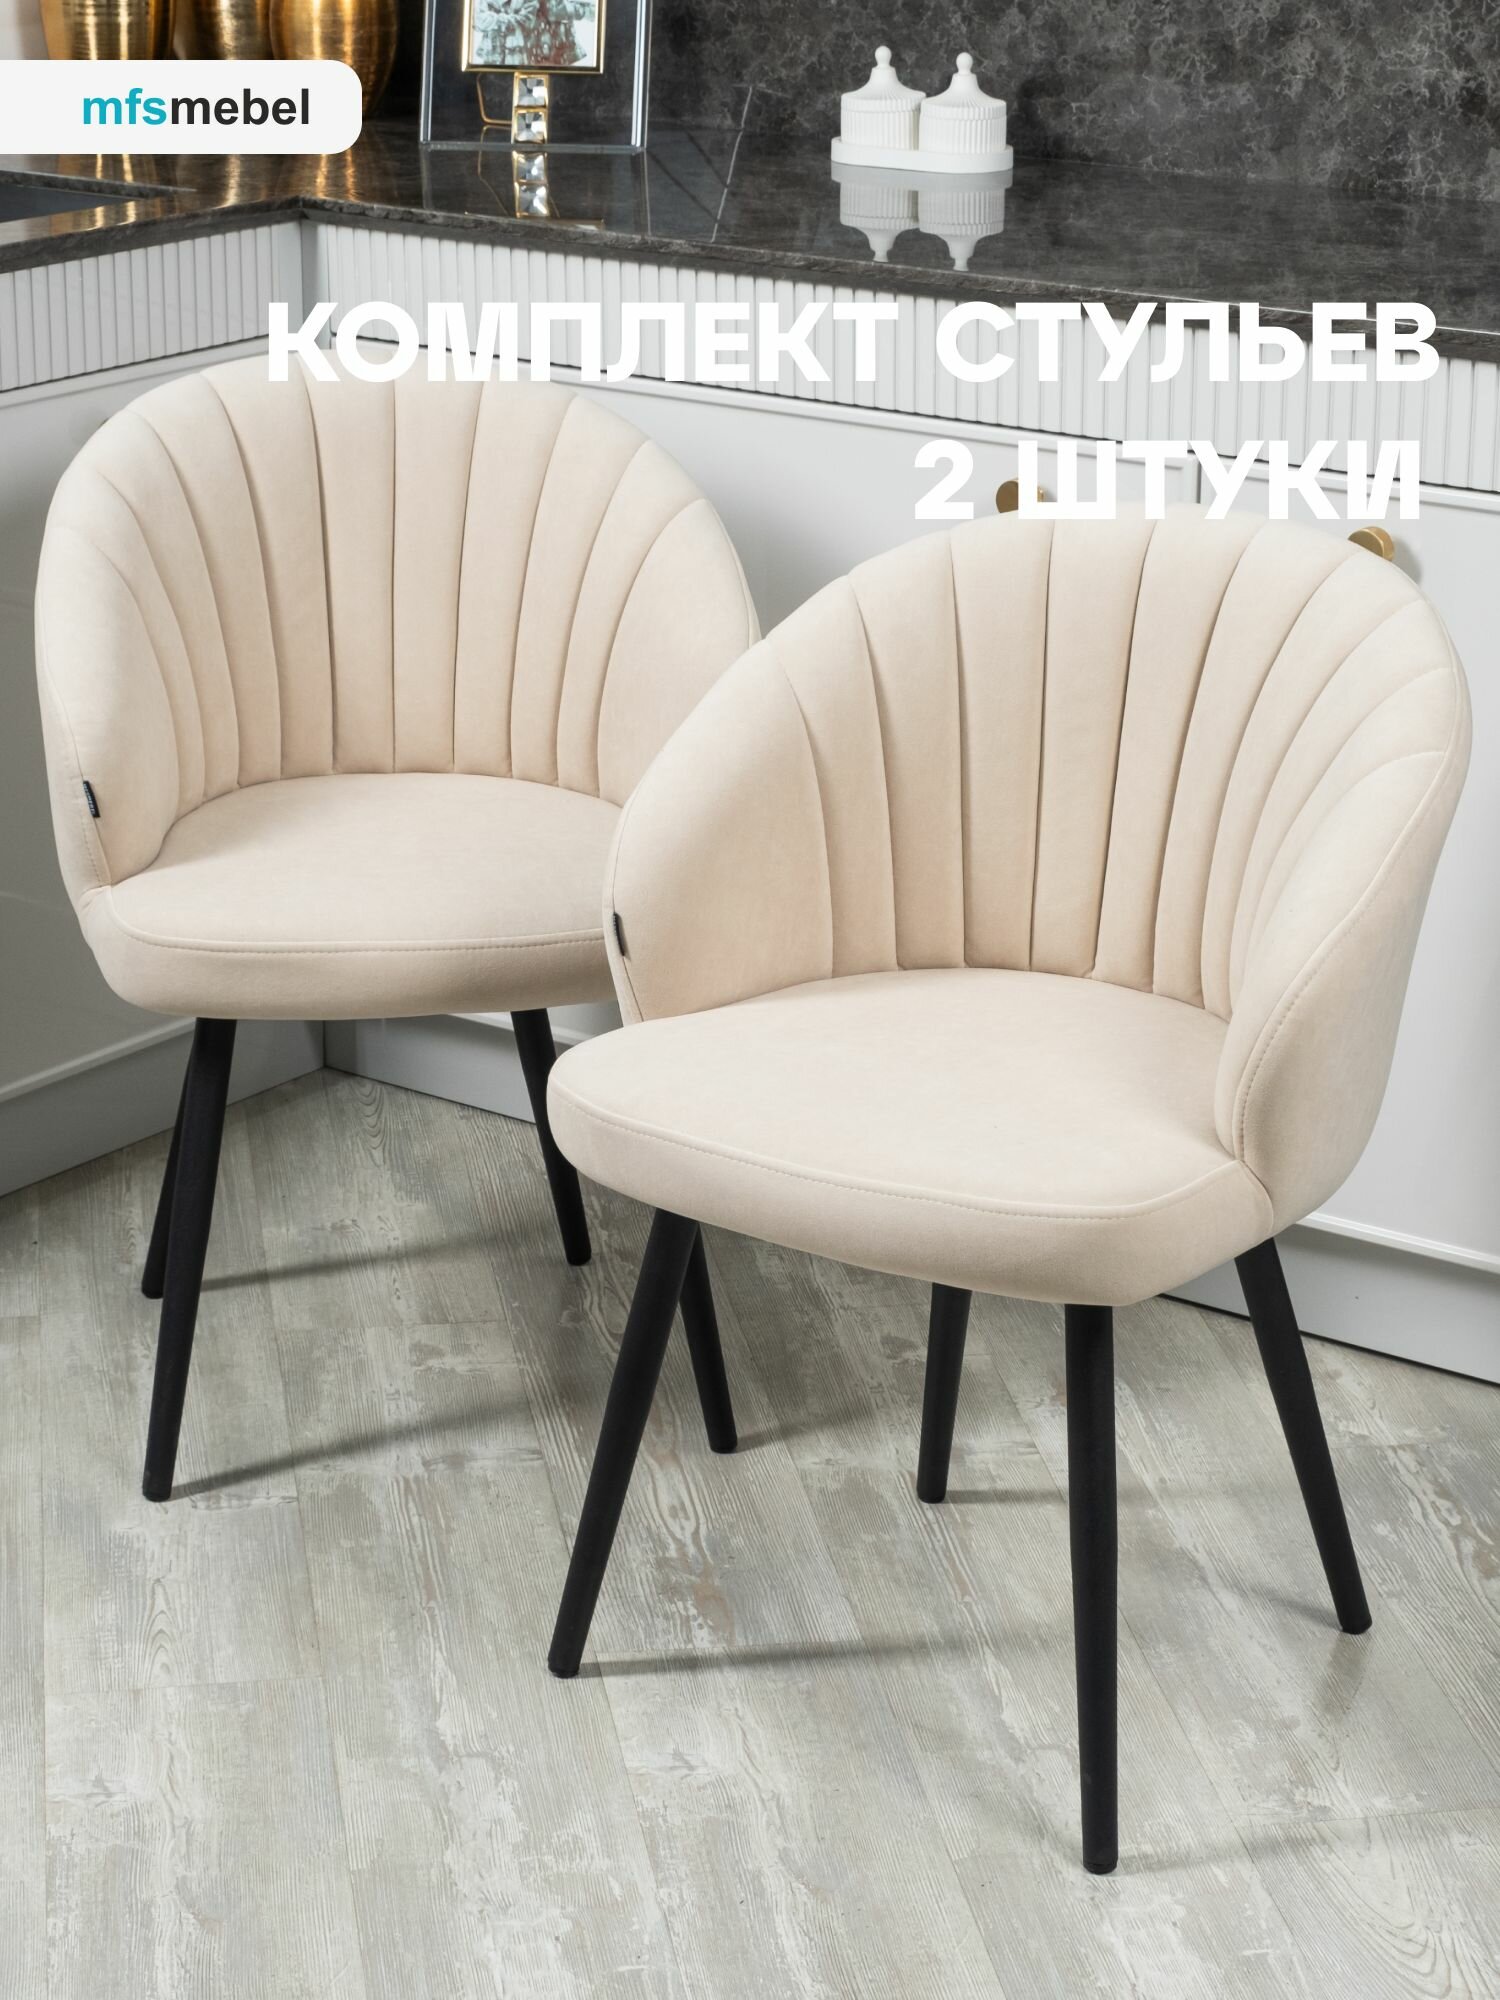 Комплект стульев "Зефир" для кухни светло-бежевый, стулья кухонные 2 штуки